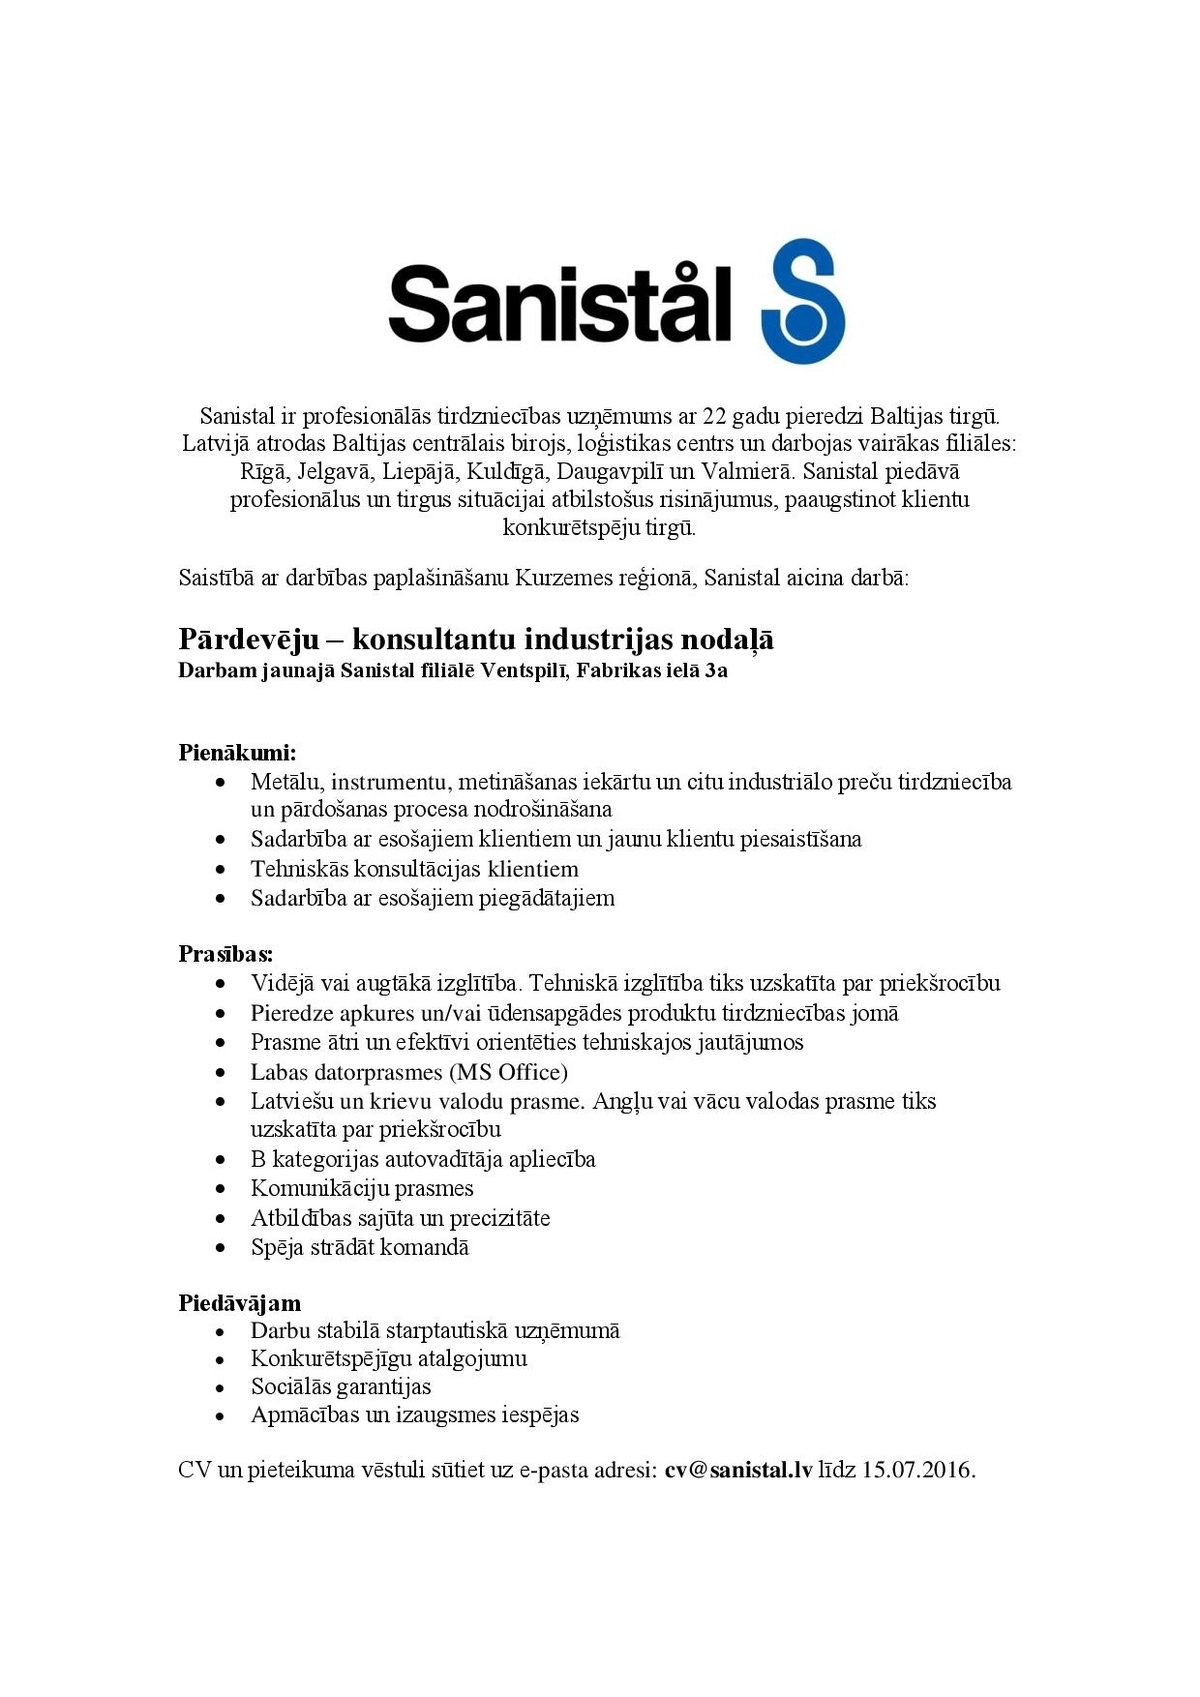 Sanistal, SIA Pārdevējs/-a – konsultants/-e industrijas nodaļā